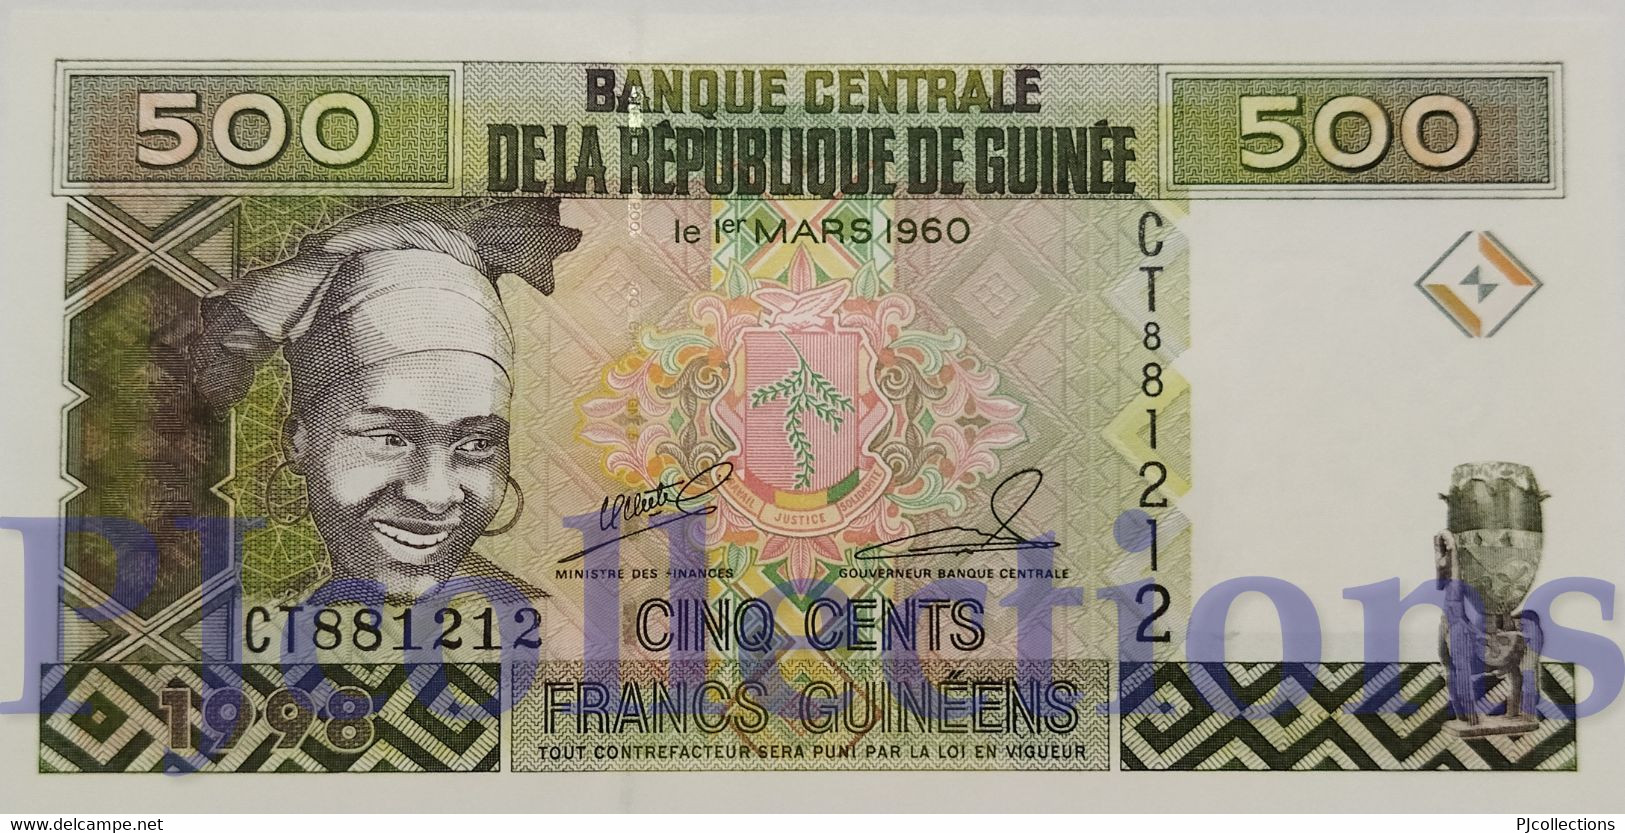 GUINEA 500 FRANCS 1998 PICK 36 UNC - Guinea